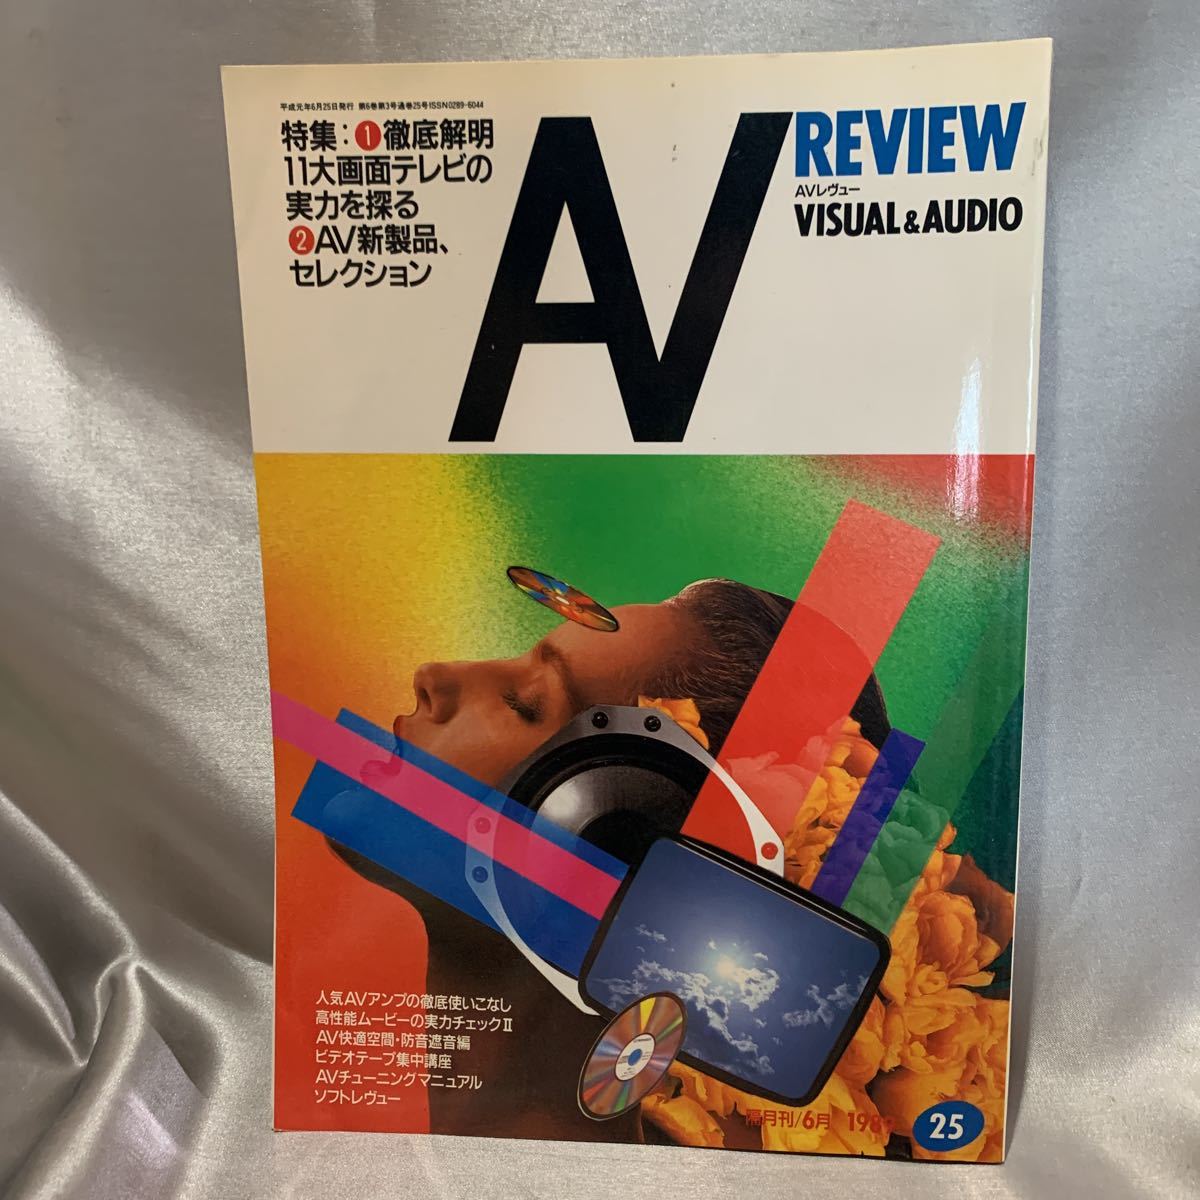 Av Review Avレヴュー Visualaudio 19年 6月 No 25 平成元年 大